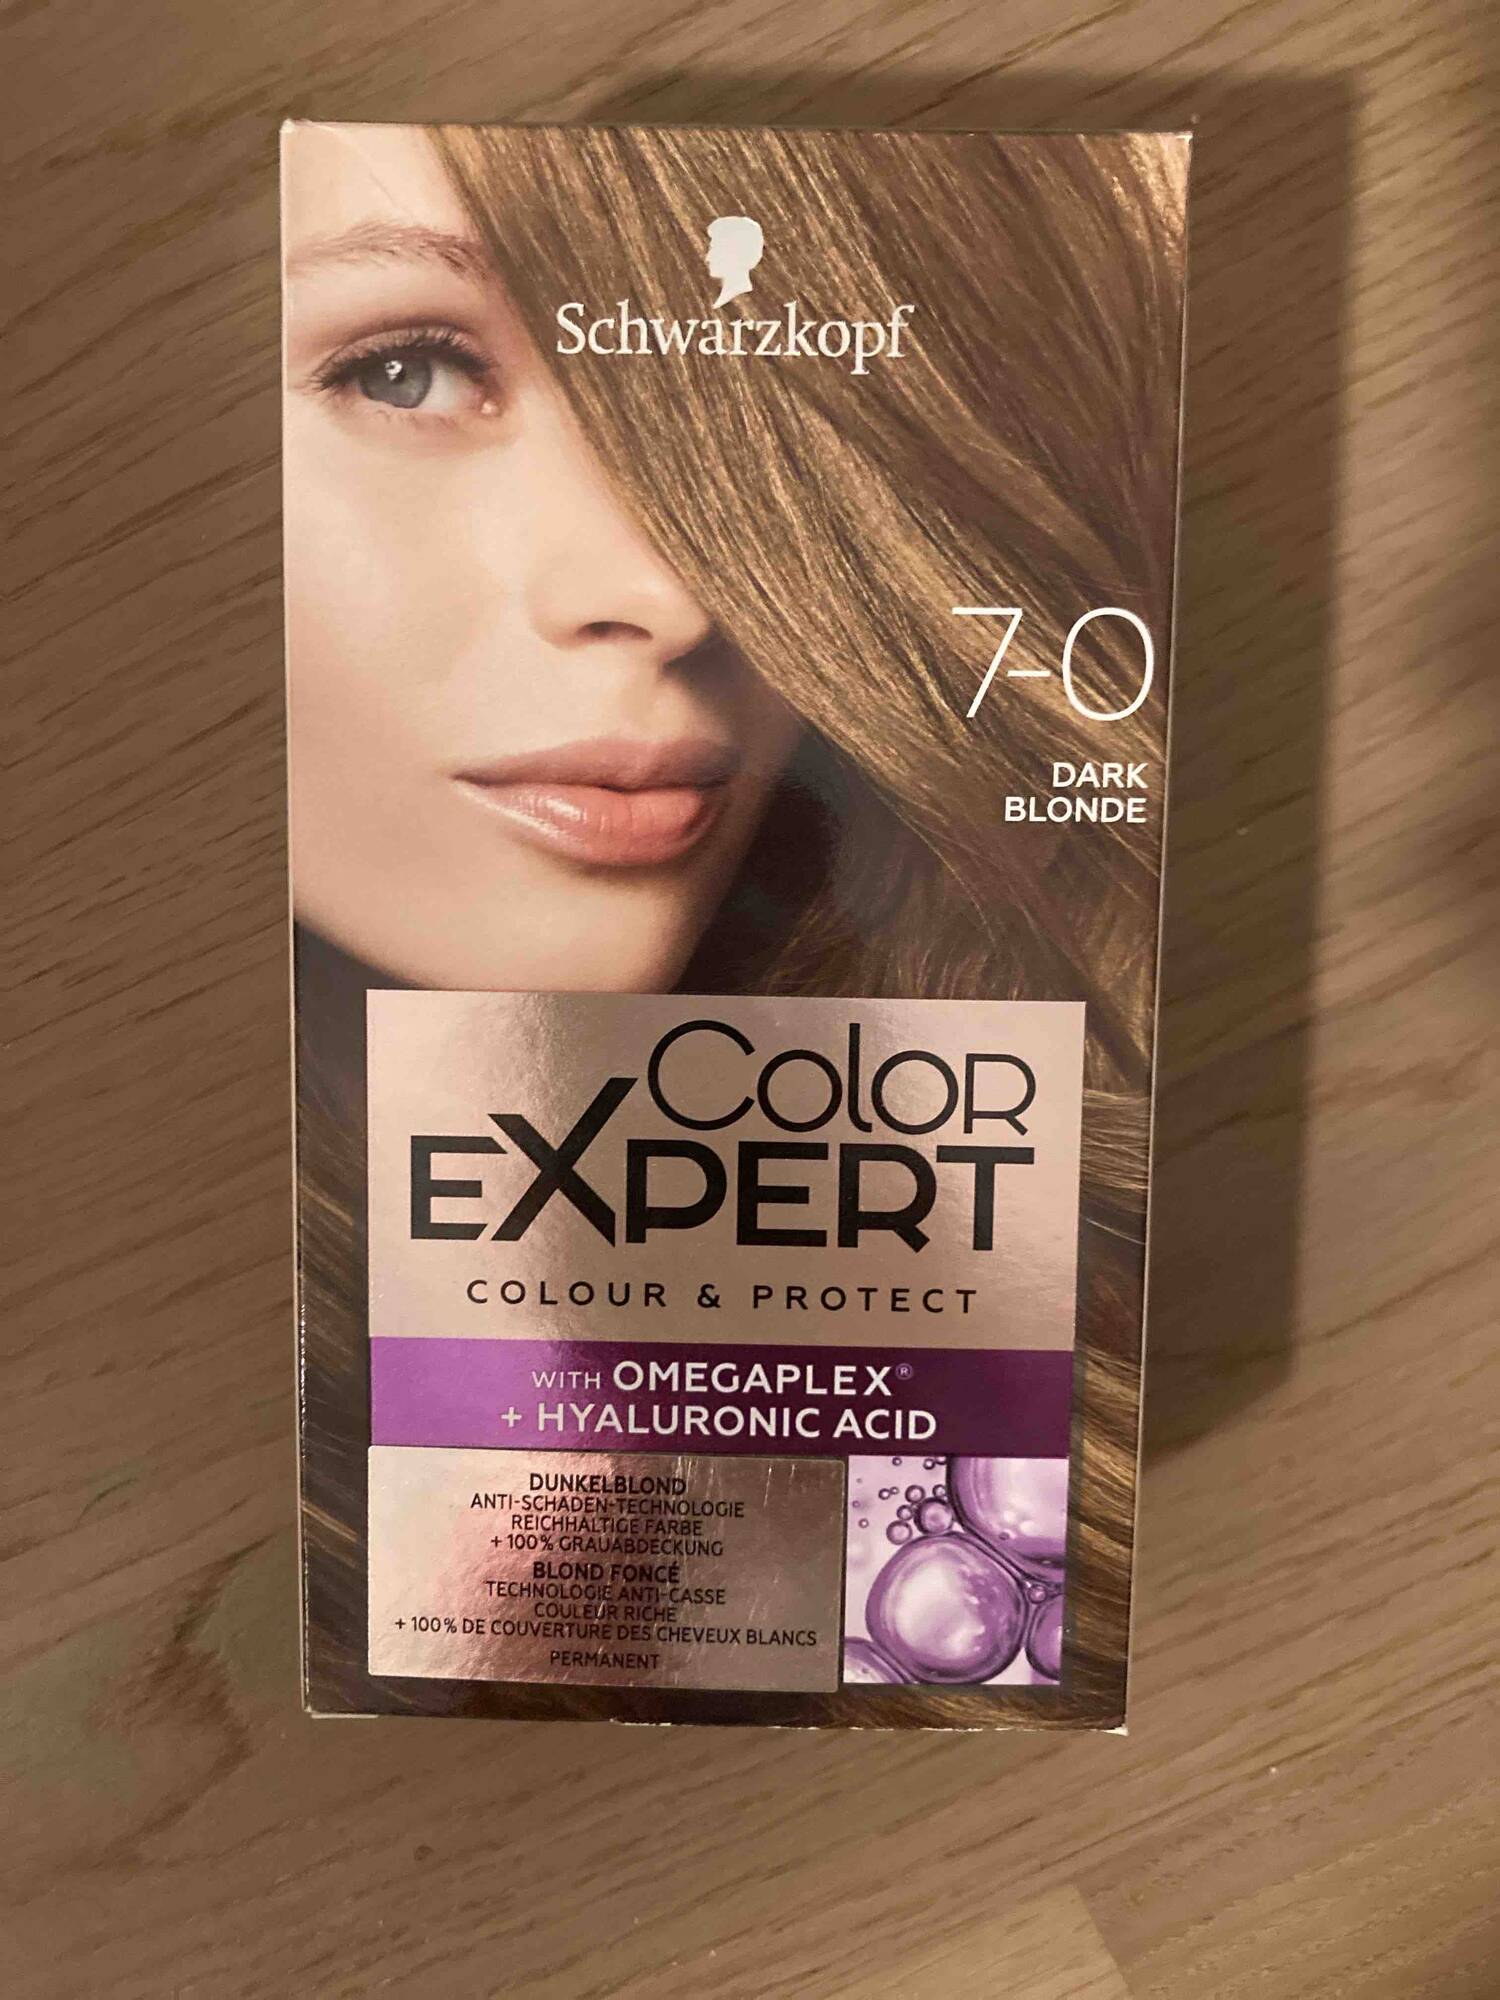 SCHWARZKOPF - Color expert 7-0 dark blonde